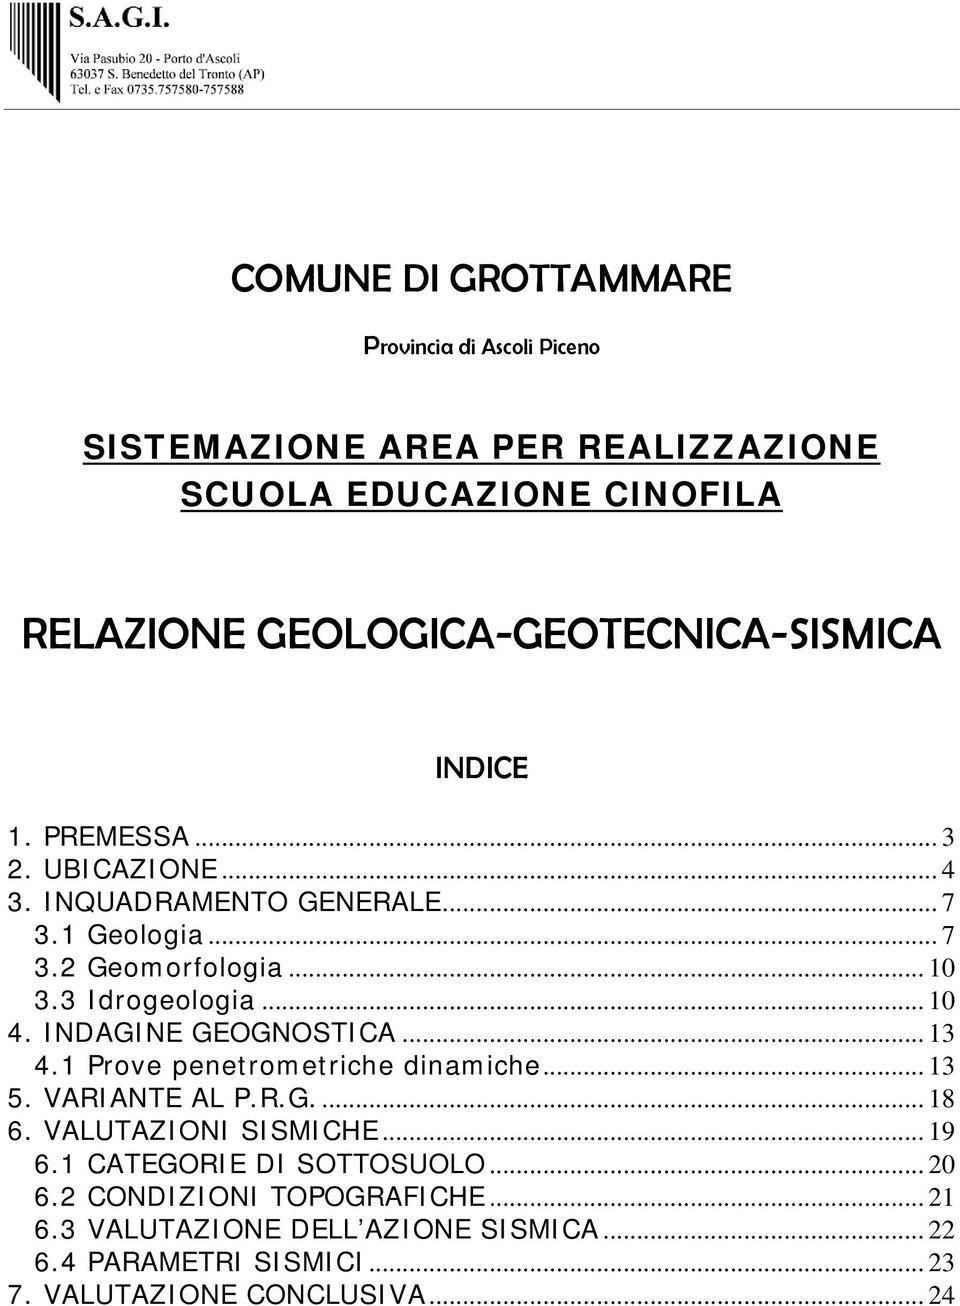 3 Idrogeologia... 10 4. INDAGINE GEOGNOSTICA... 13 4.1 Prove penetrometriche dinamiche... 13 5. VARIANTE AL P.R.G... 18 6. VALUTAZIONI SISMICHE.